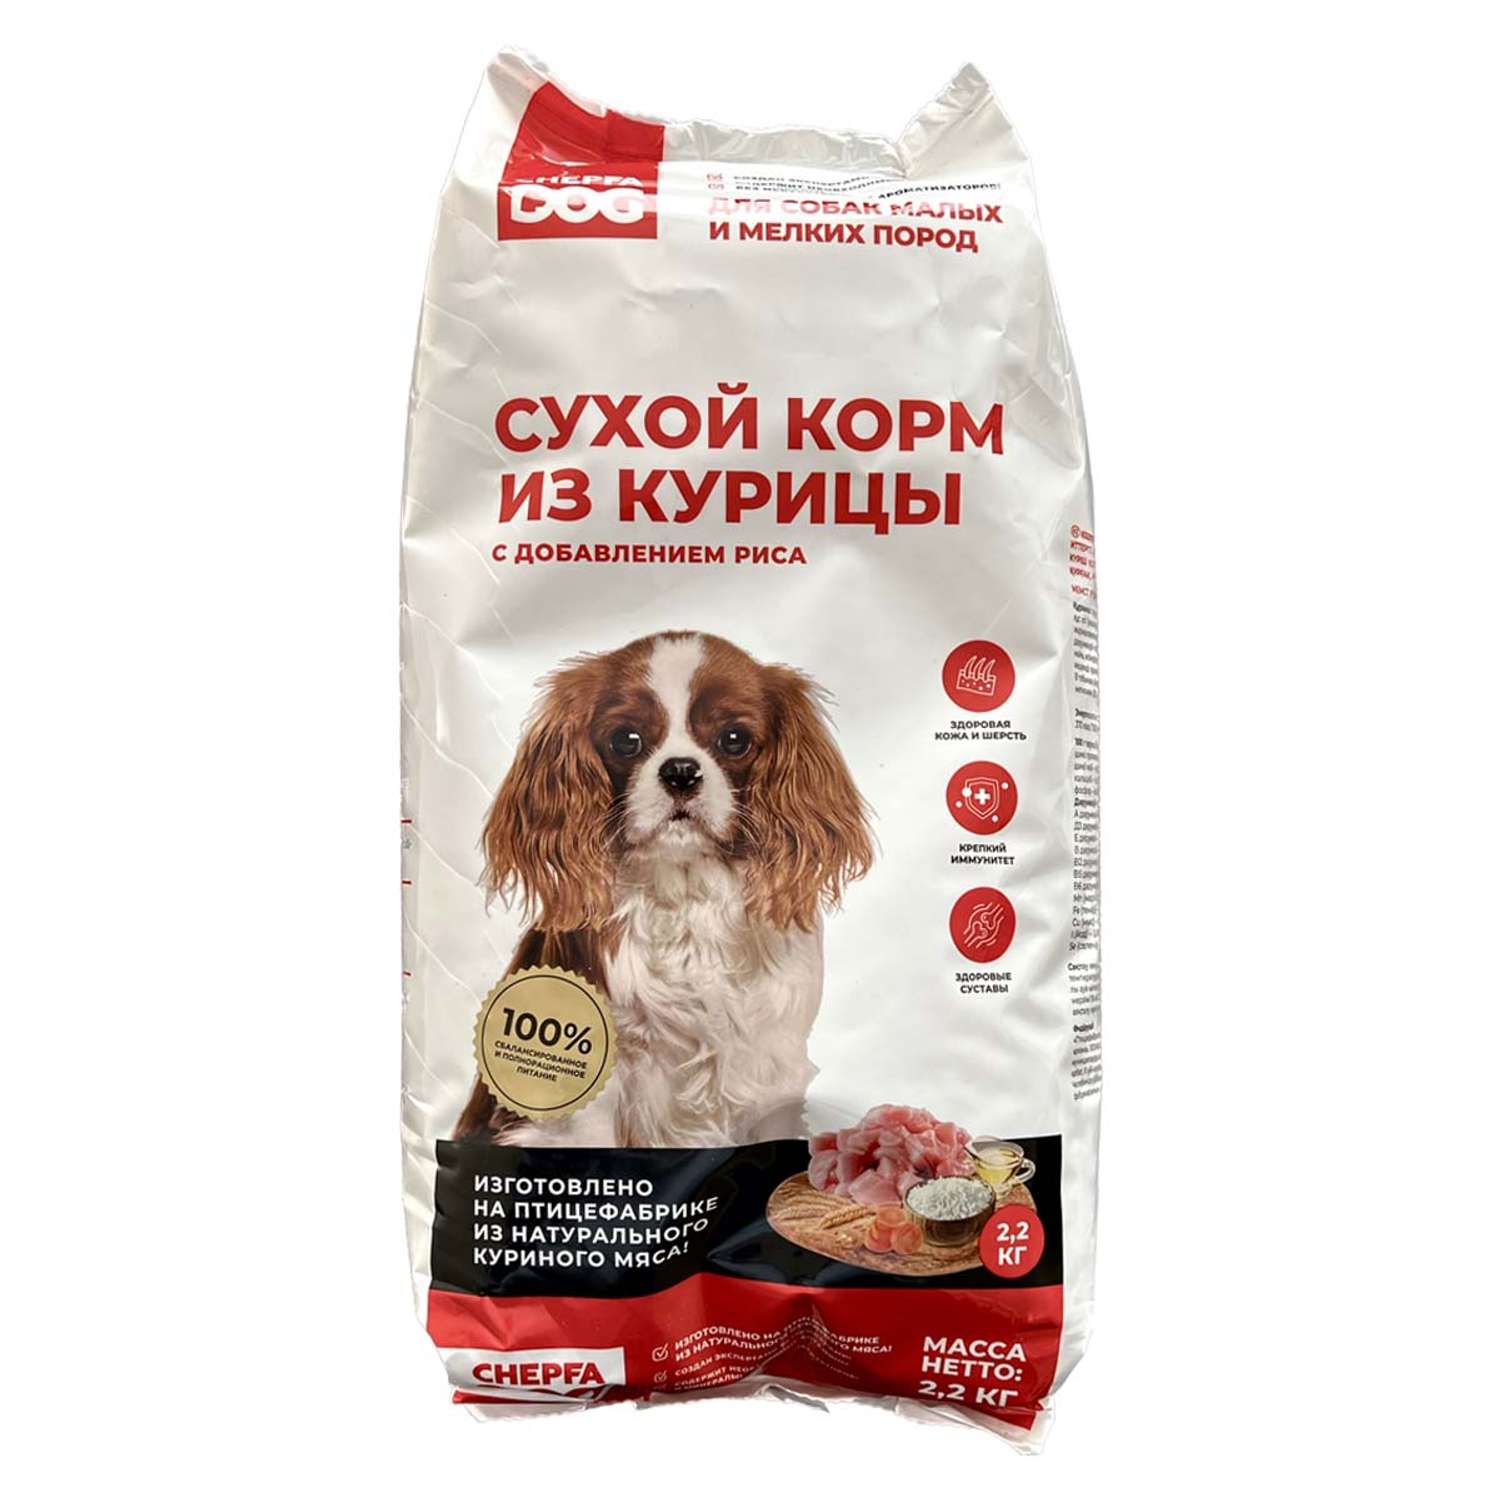 Сухой корм для собак Chepfa Dog Полнорационный из курицы 2.2 кг для взрослых собак малых и мелких пород - фото 1